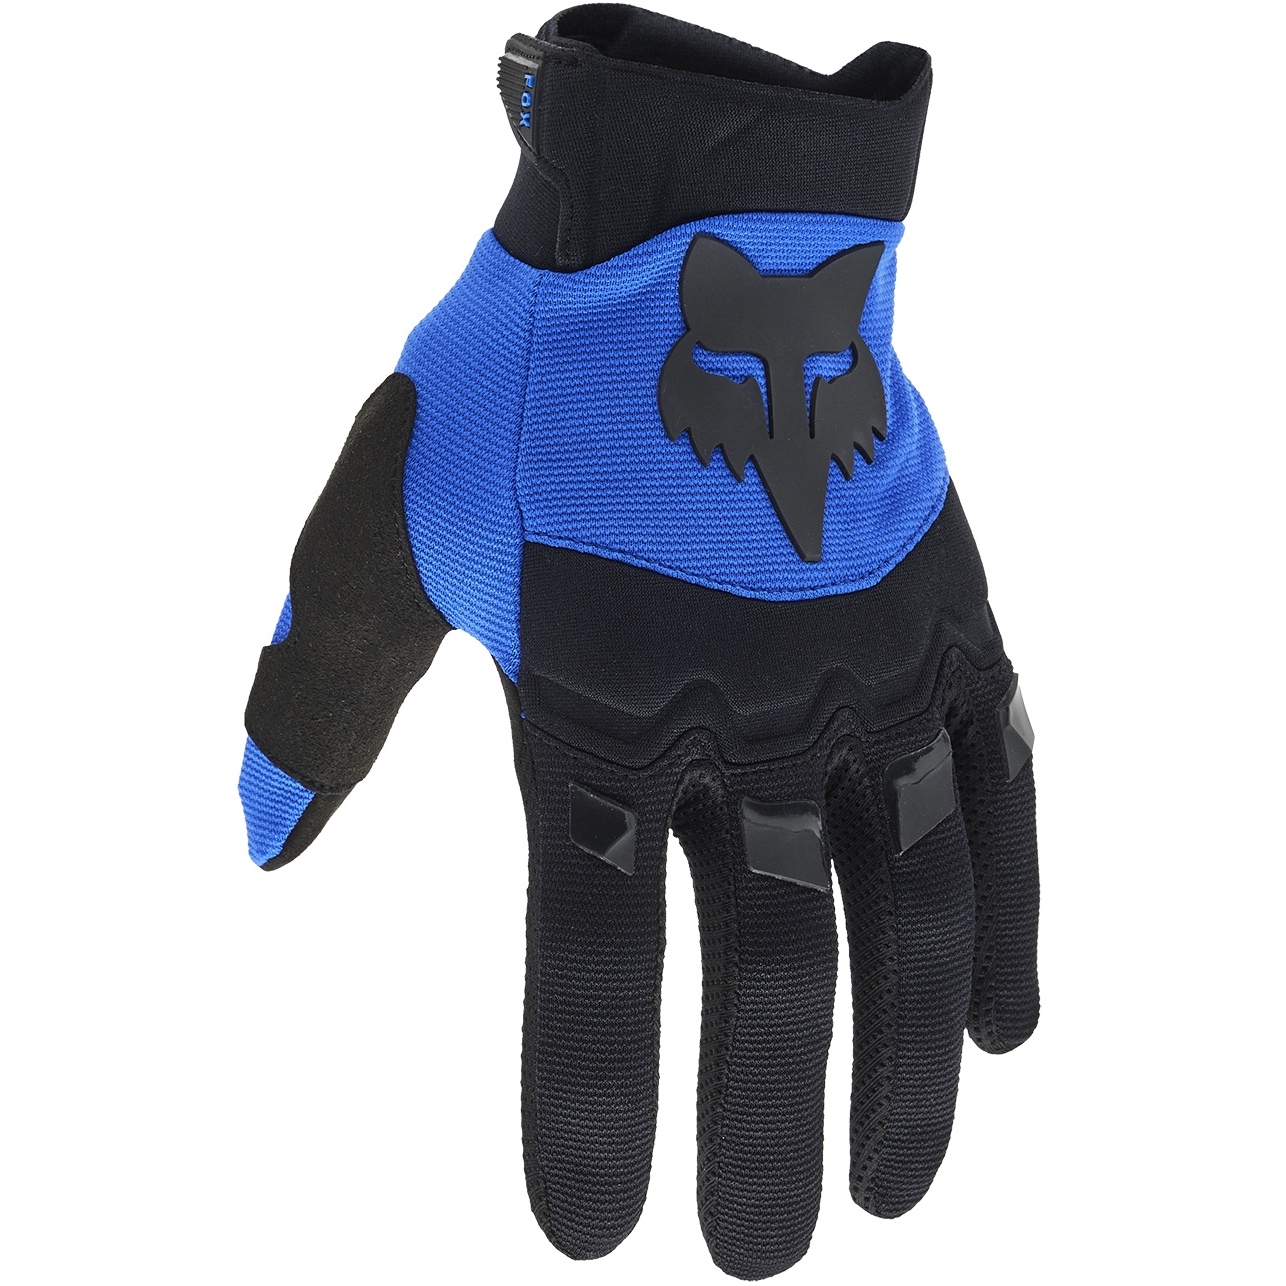 Produktbild von FOX Dirtpaw MTB Handschuhe - blau